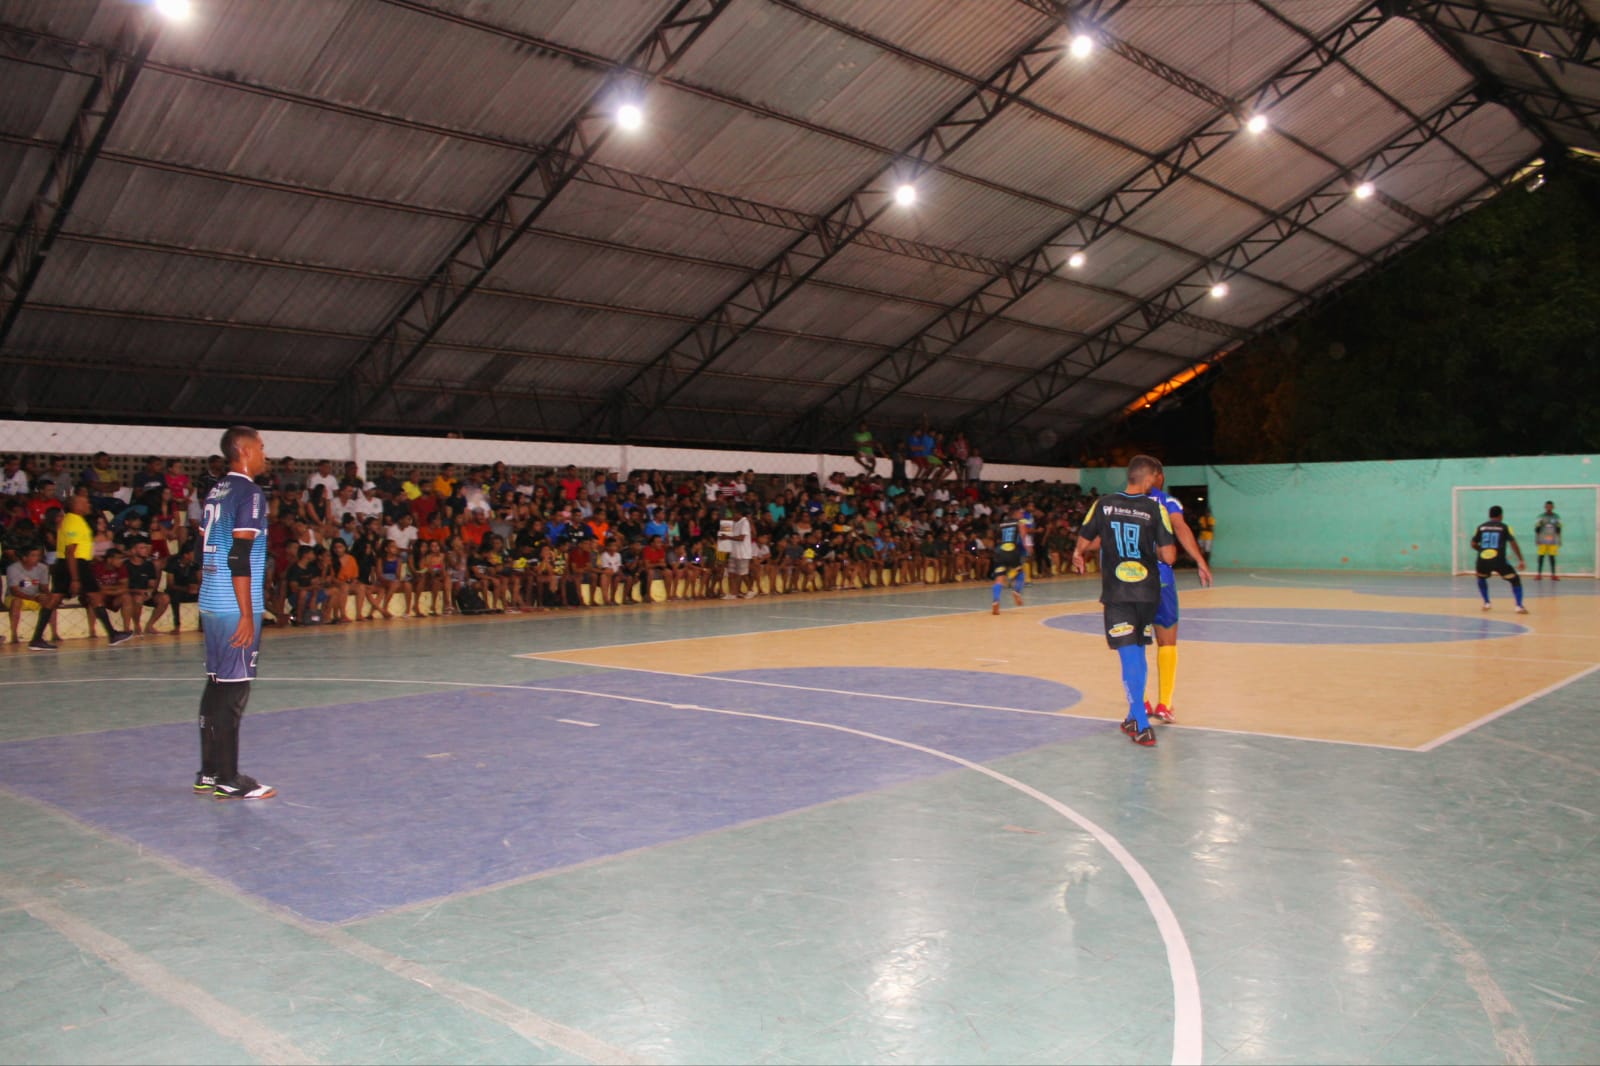 Campeonato Unionense de futsal: Galácticos e Ceva se enfrentam em rodada tripla no Pindungão